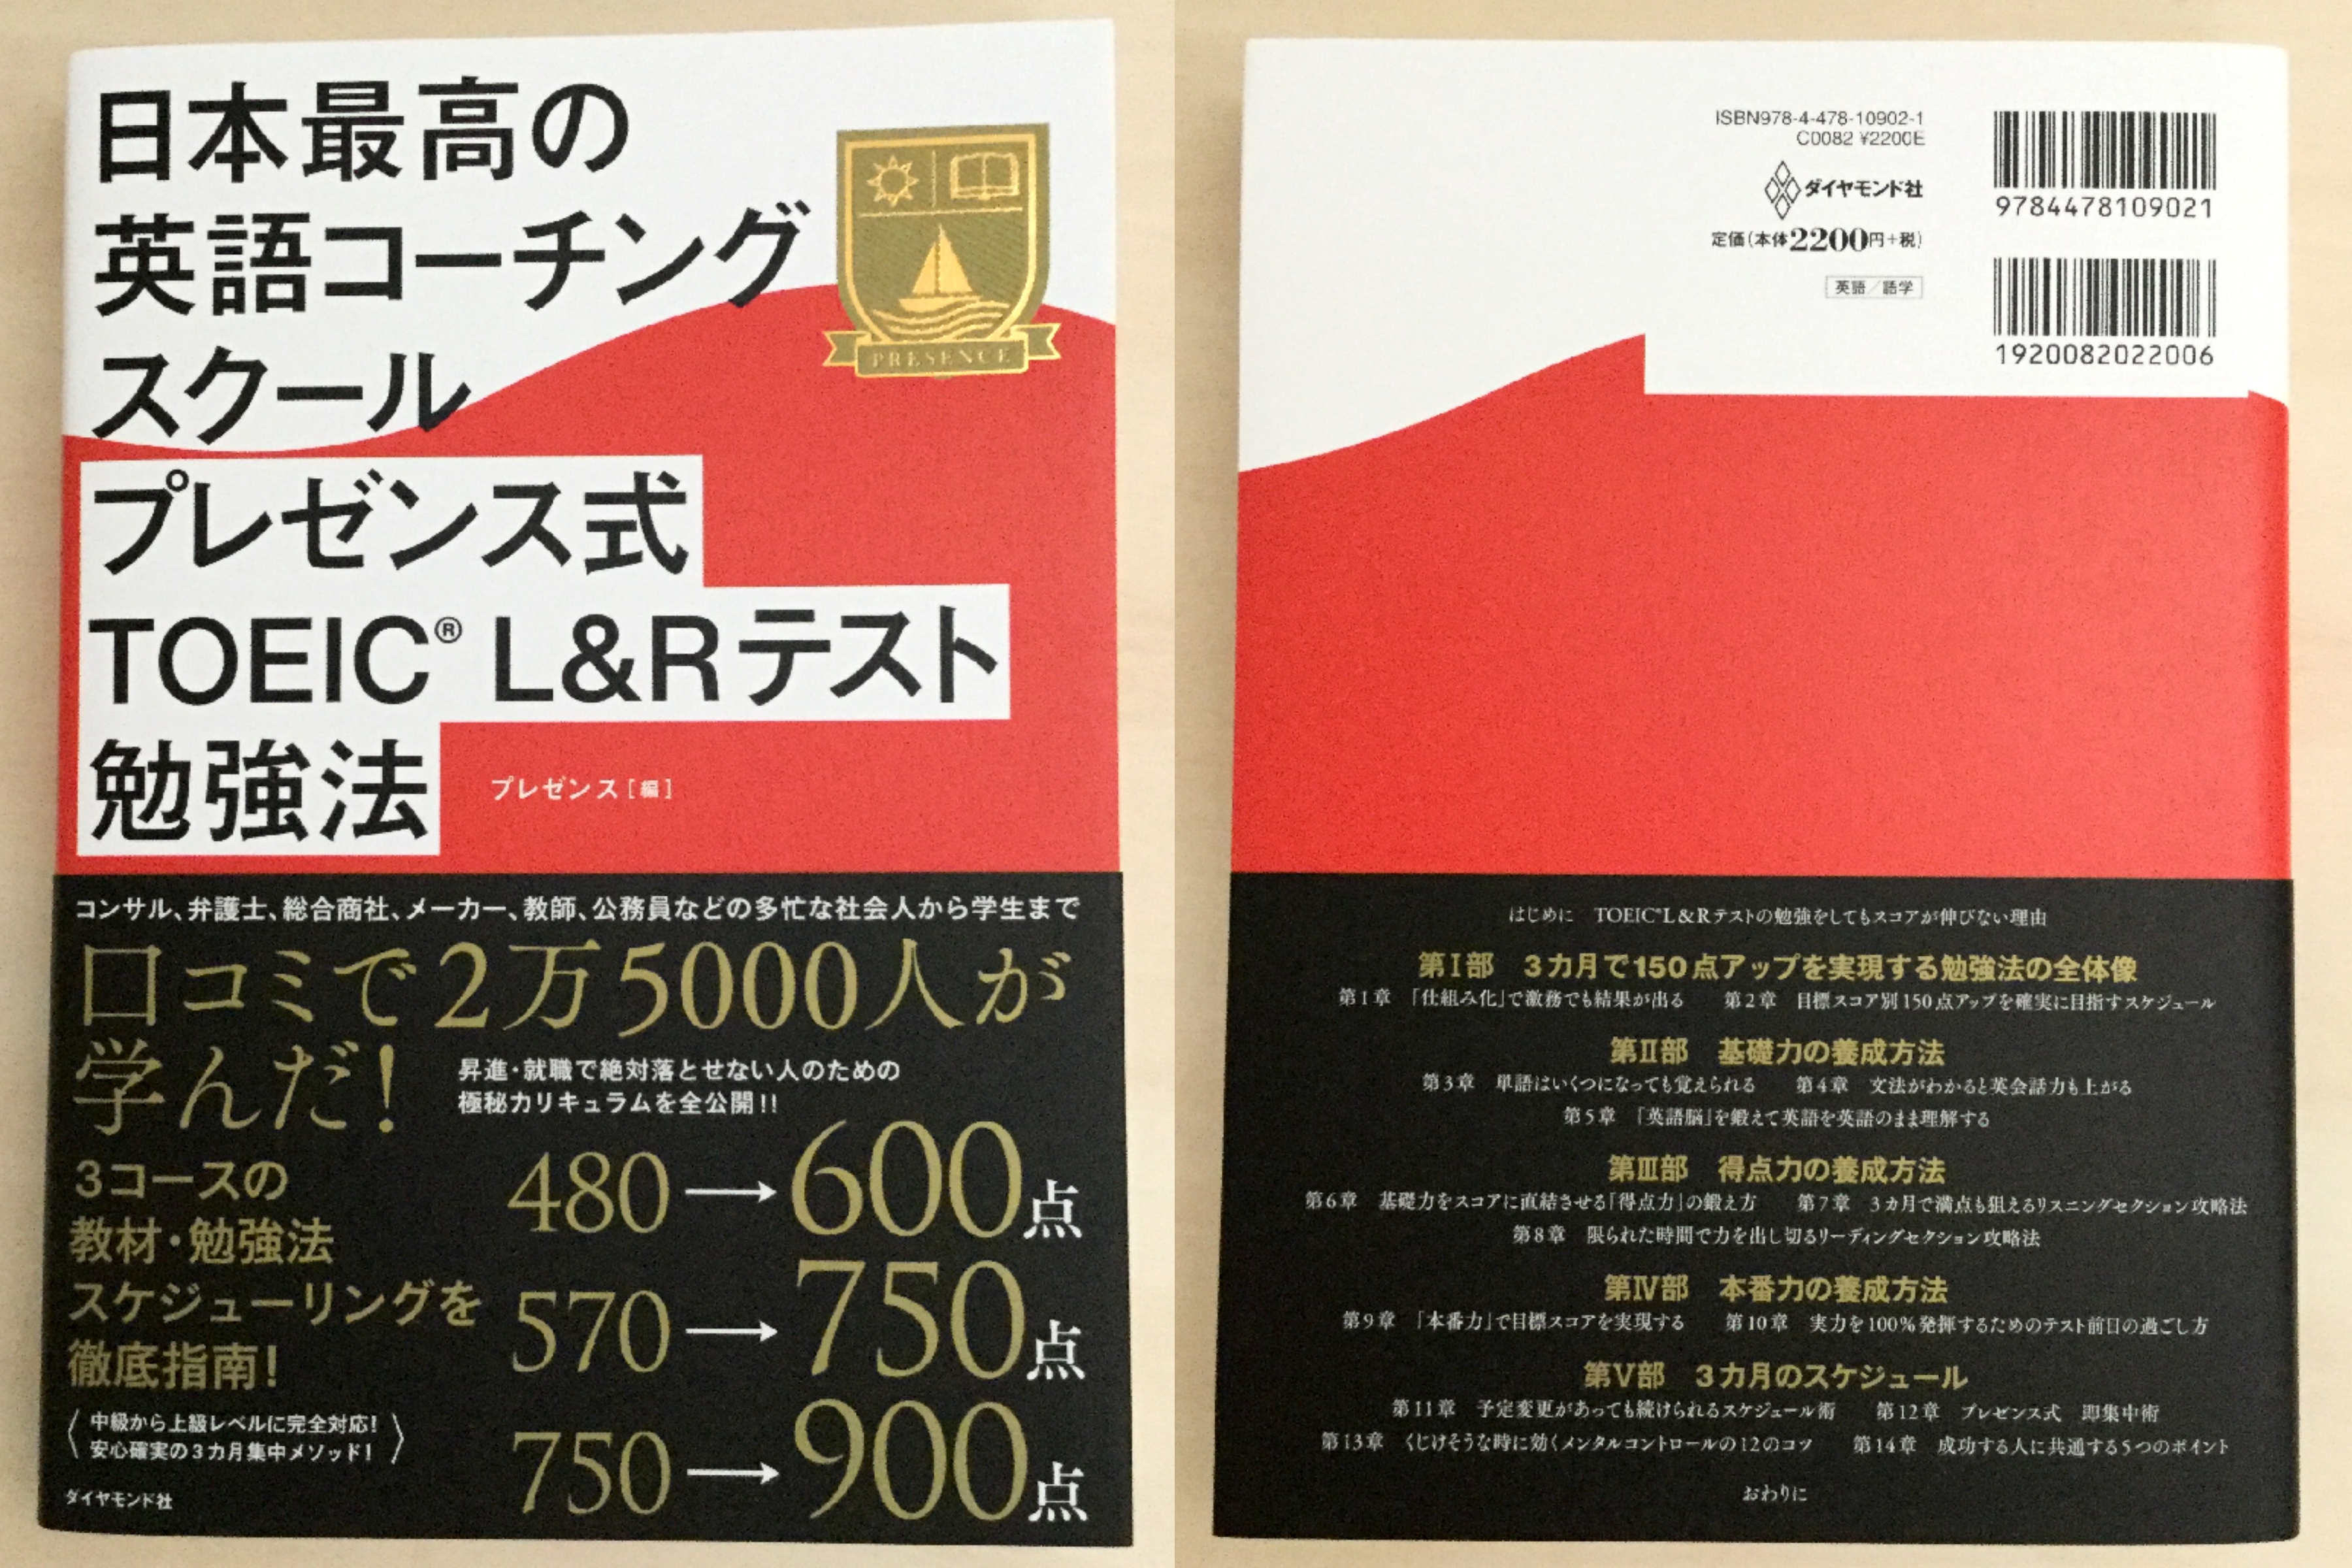 中身 使い方 日本最高の英語コーチングスクールプレゼンス式toeicテスト勉強法 English Leaf